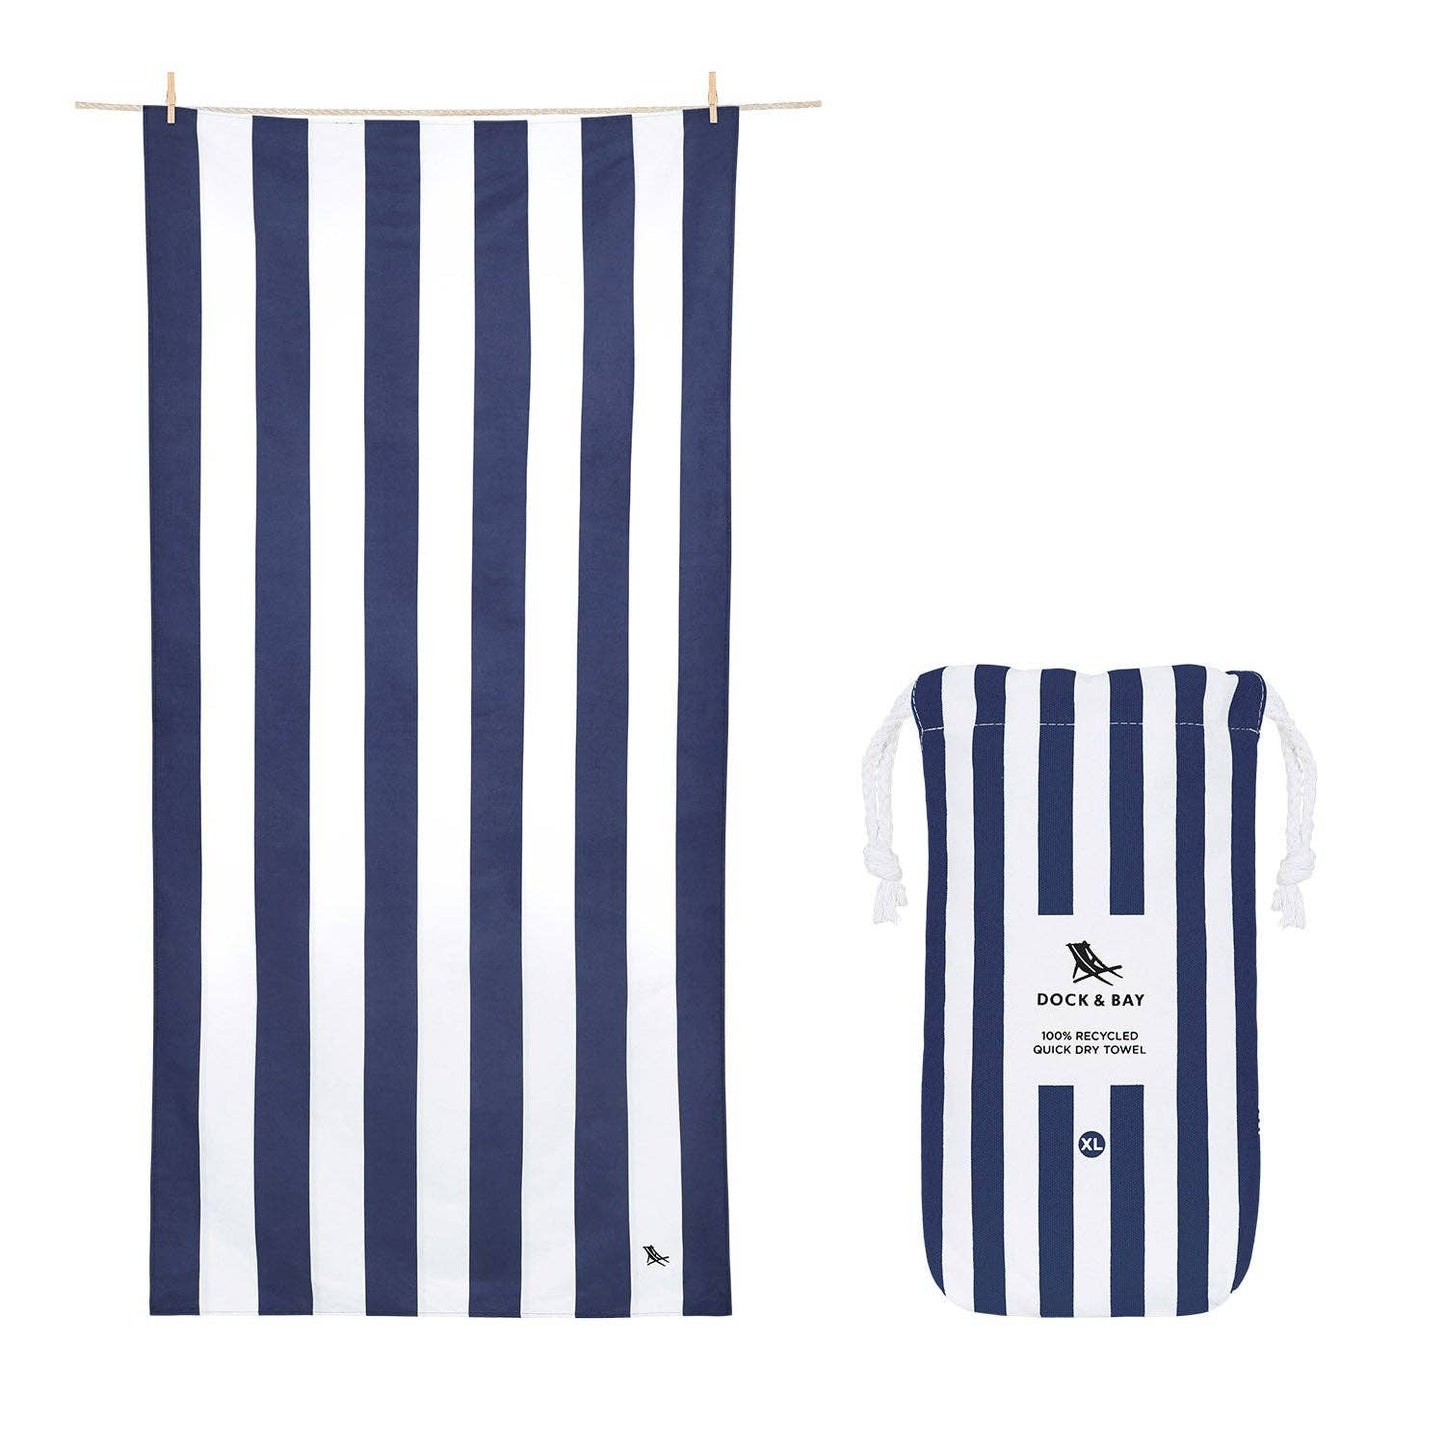 Dock & Bay Quick Dry Towels - Cabana - Whitsunday Blue